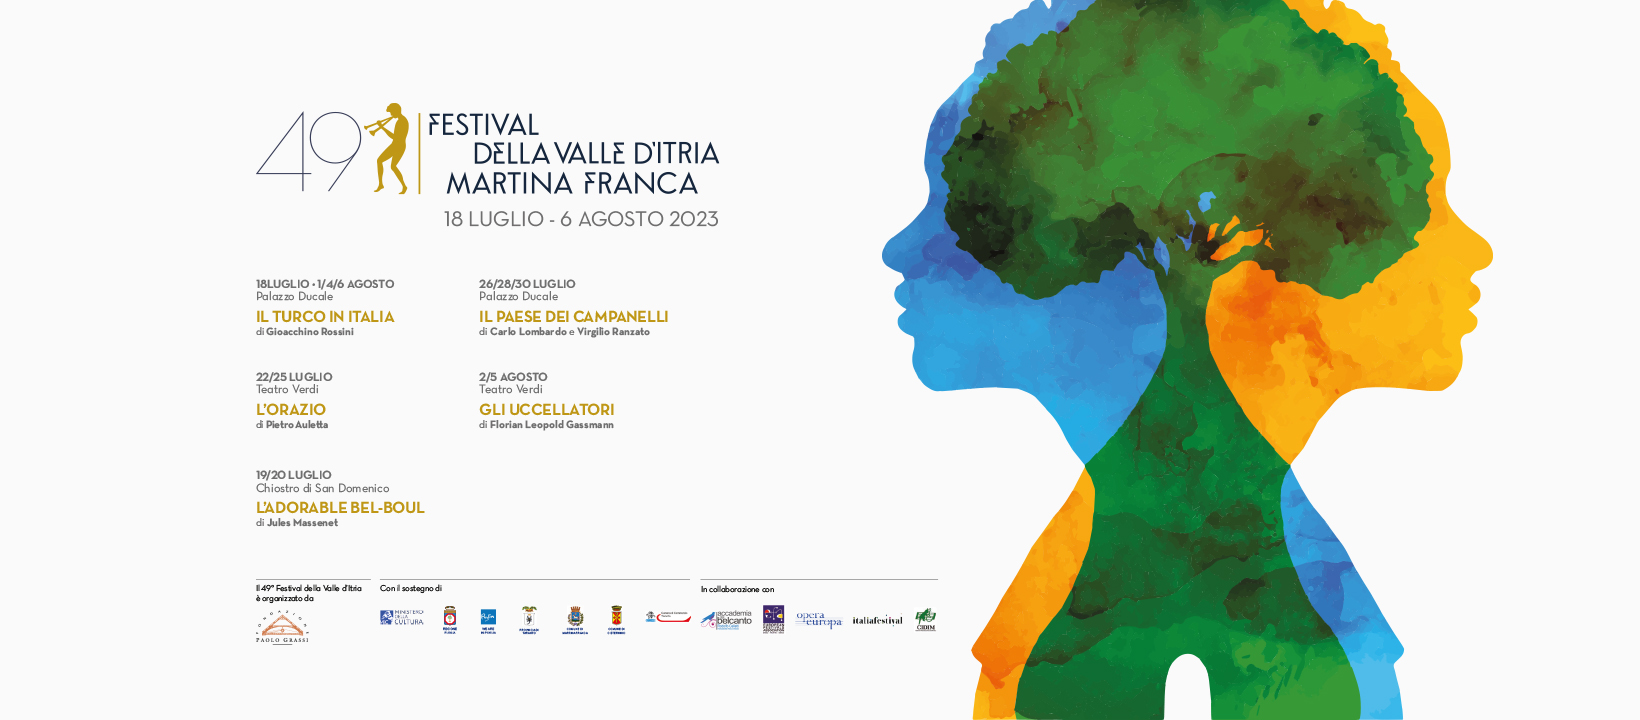 Galleria Presentata la 49esima edizione del Festival della Valle d'Itria - Diapositiva 5 di 5